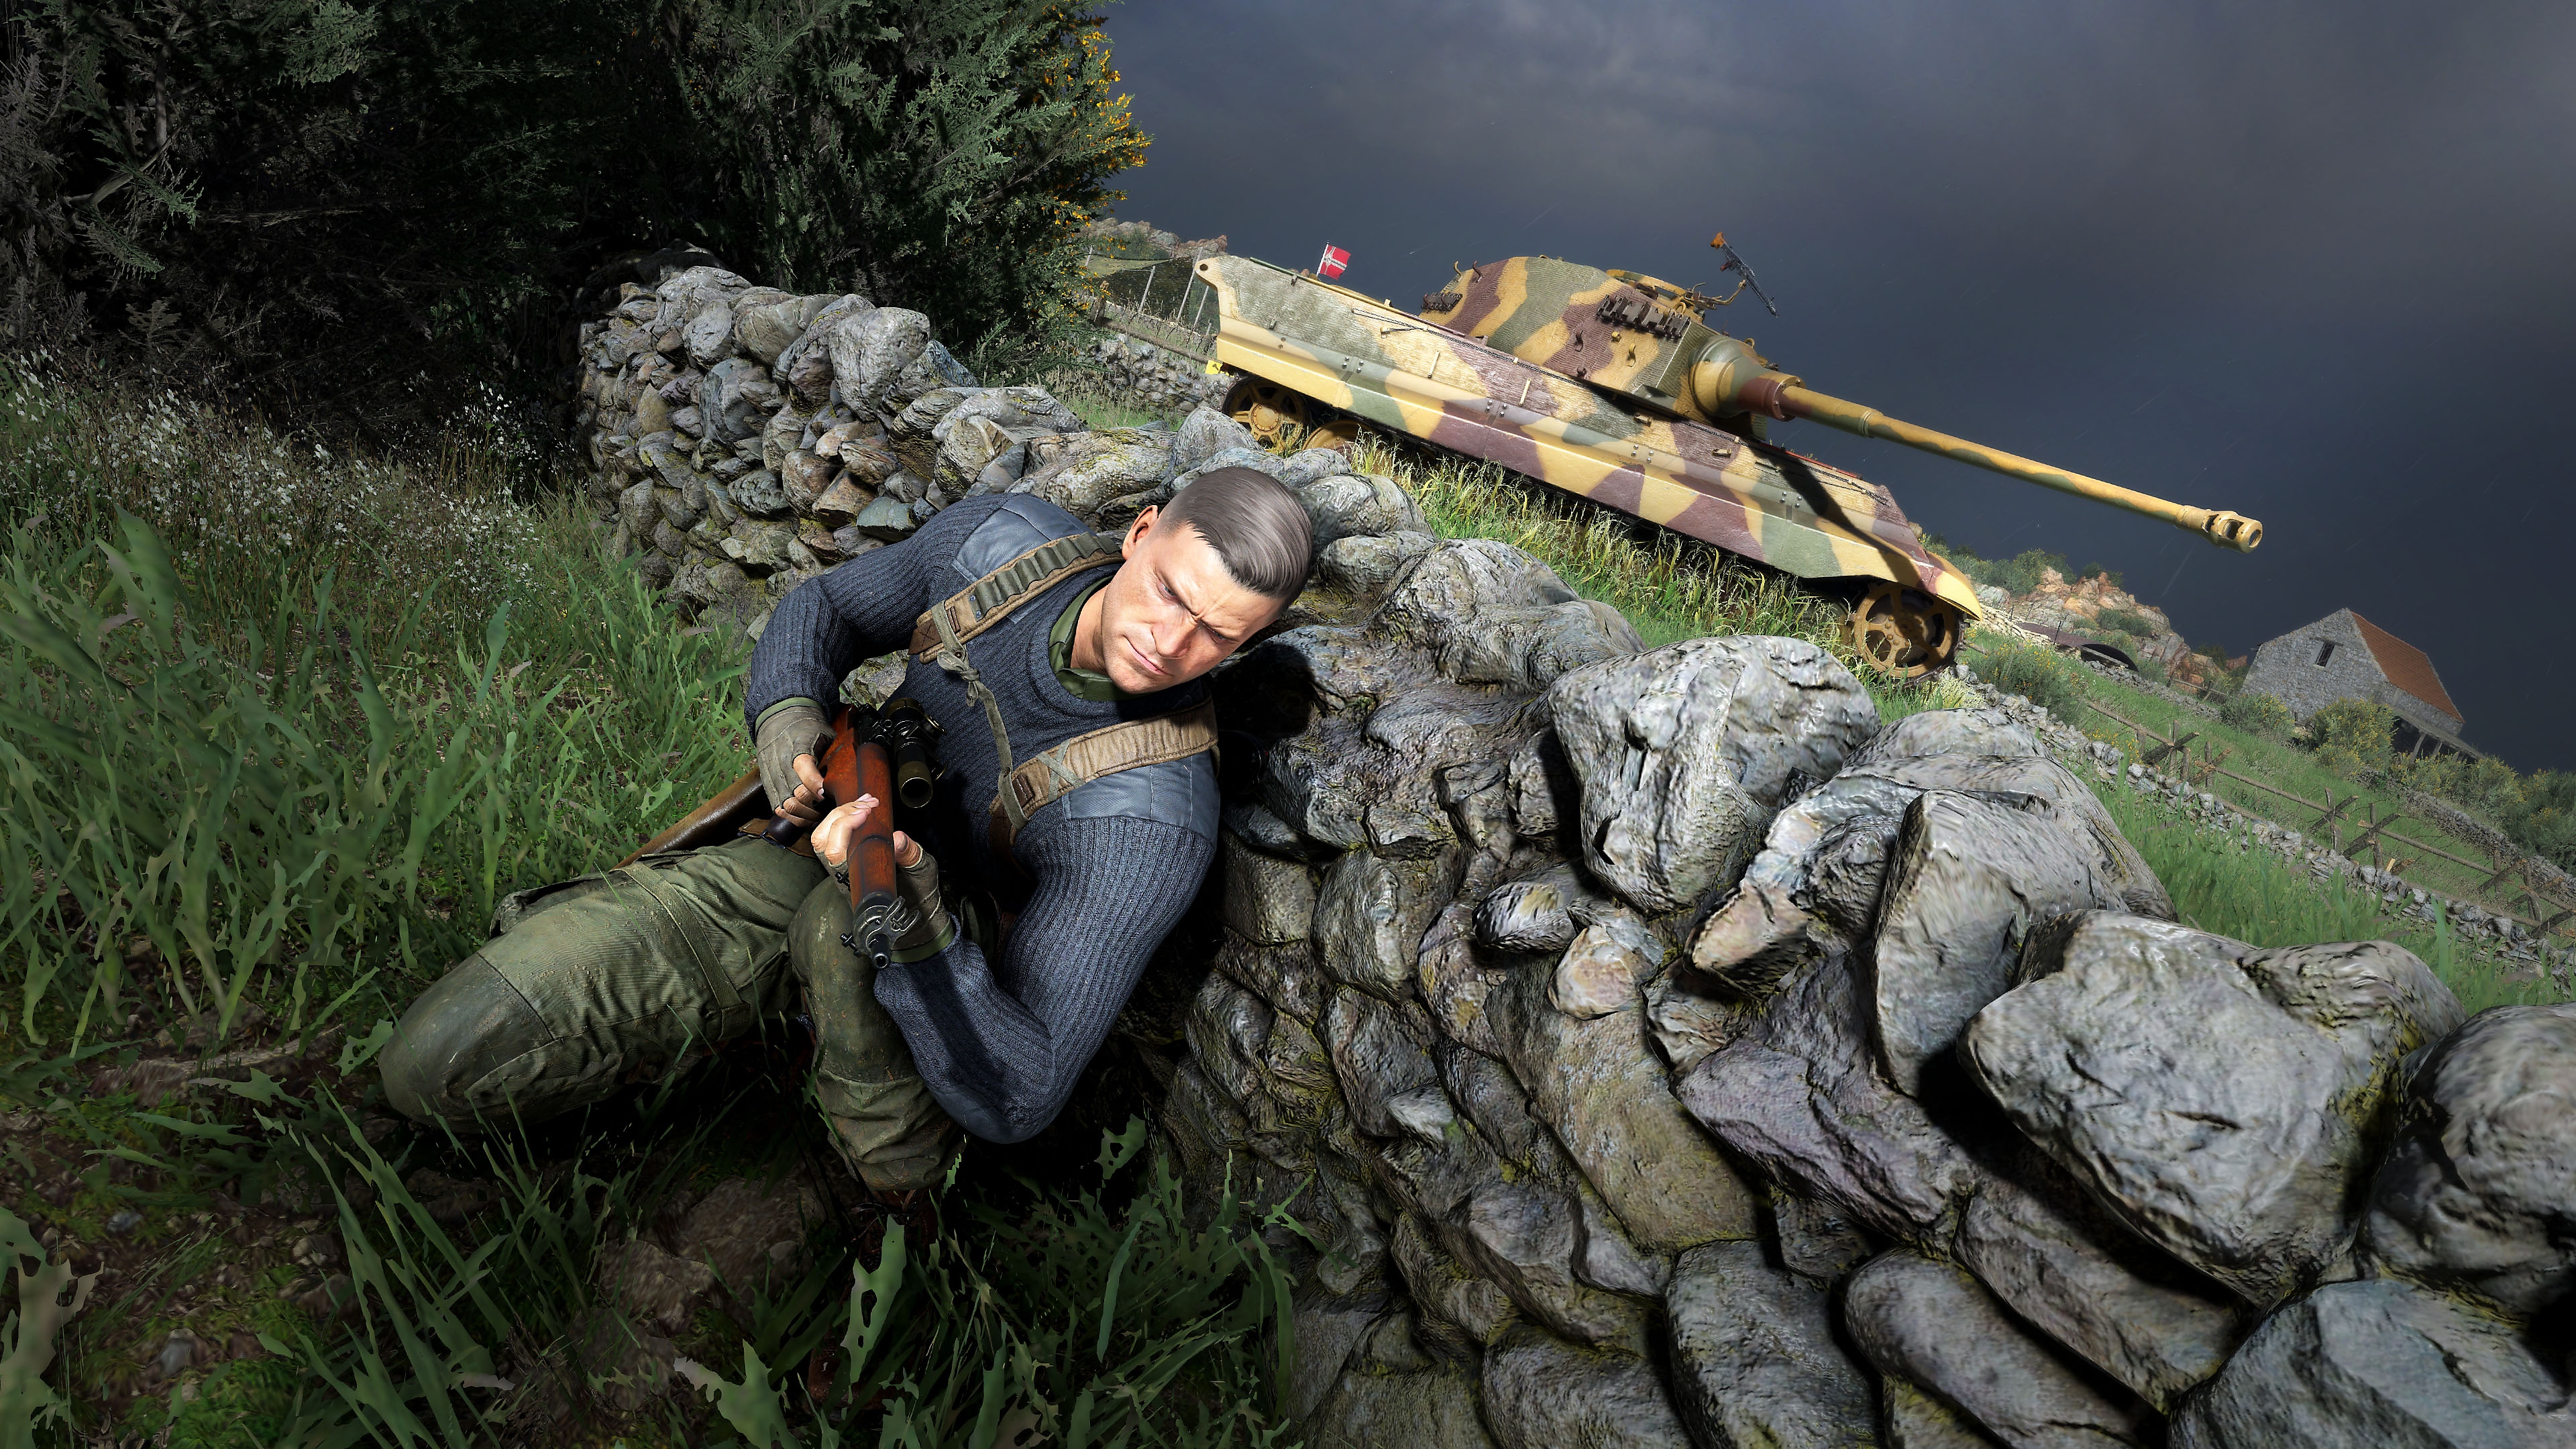 Screenshot van Sniper Elite 5 met daarop een personage dat dekking zoekt achter een muur